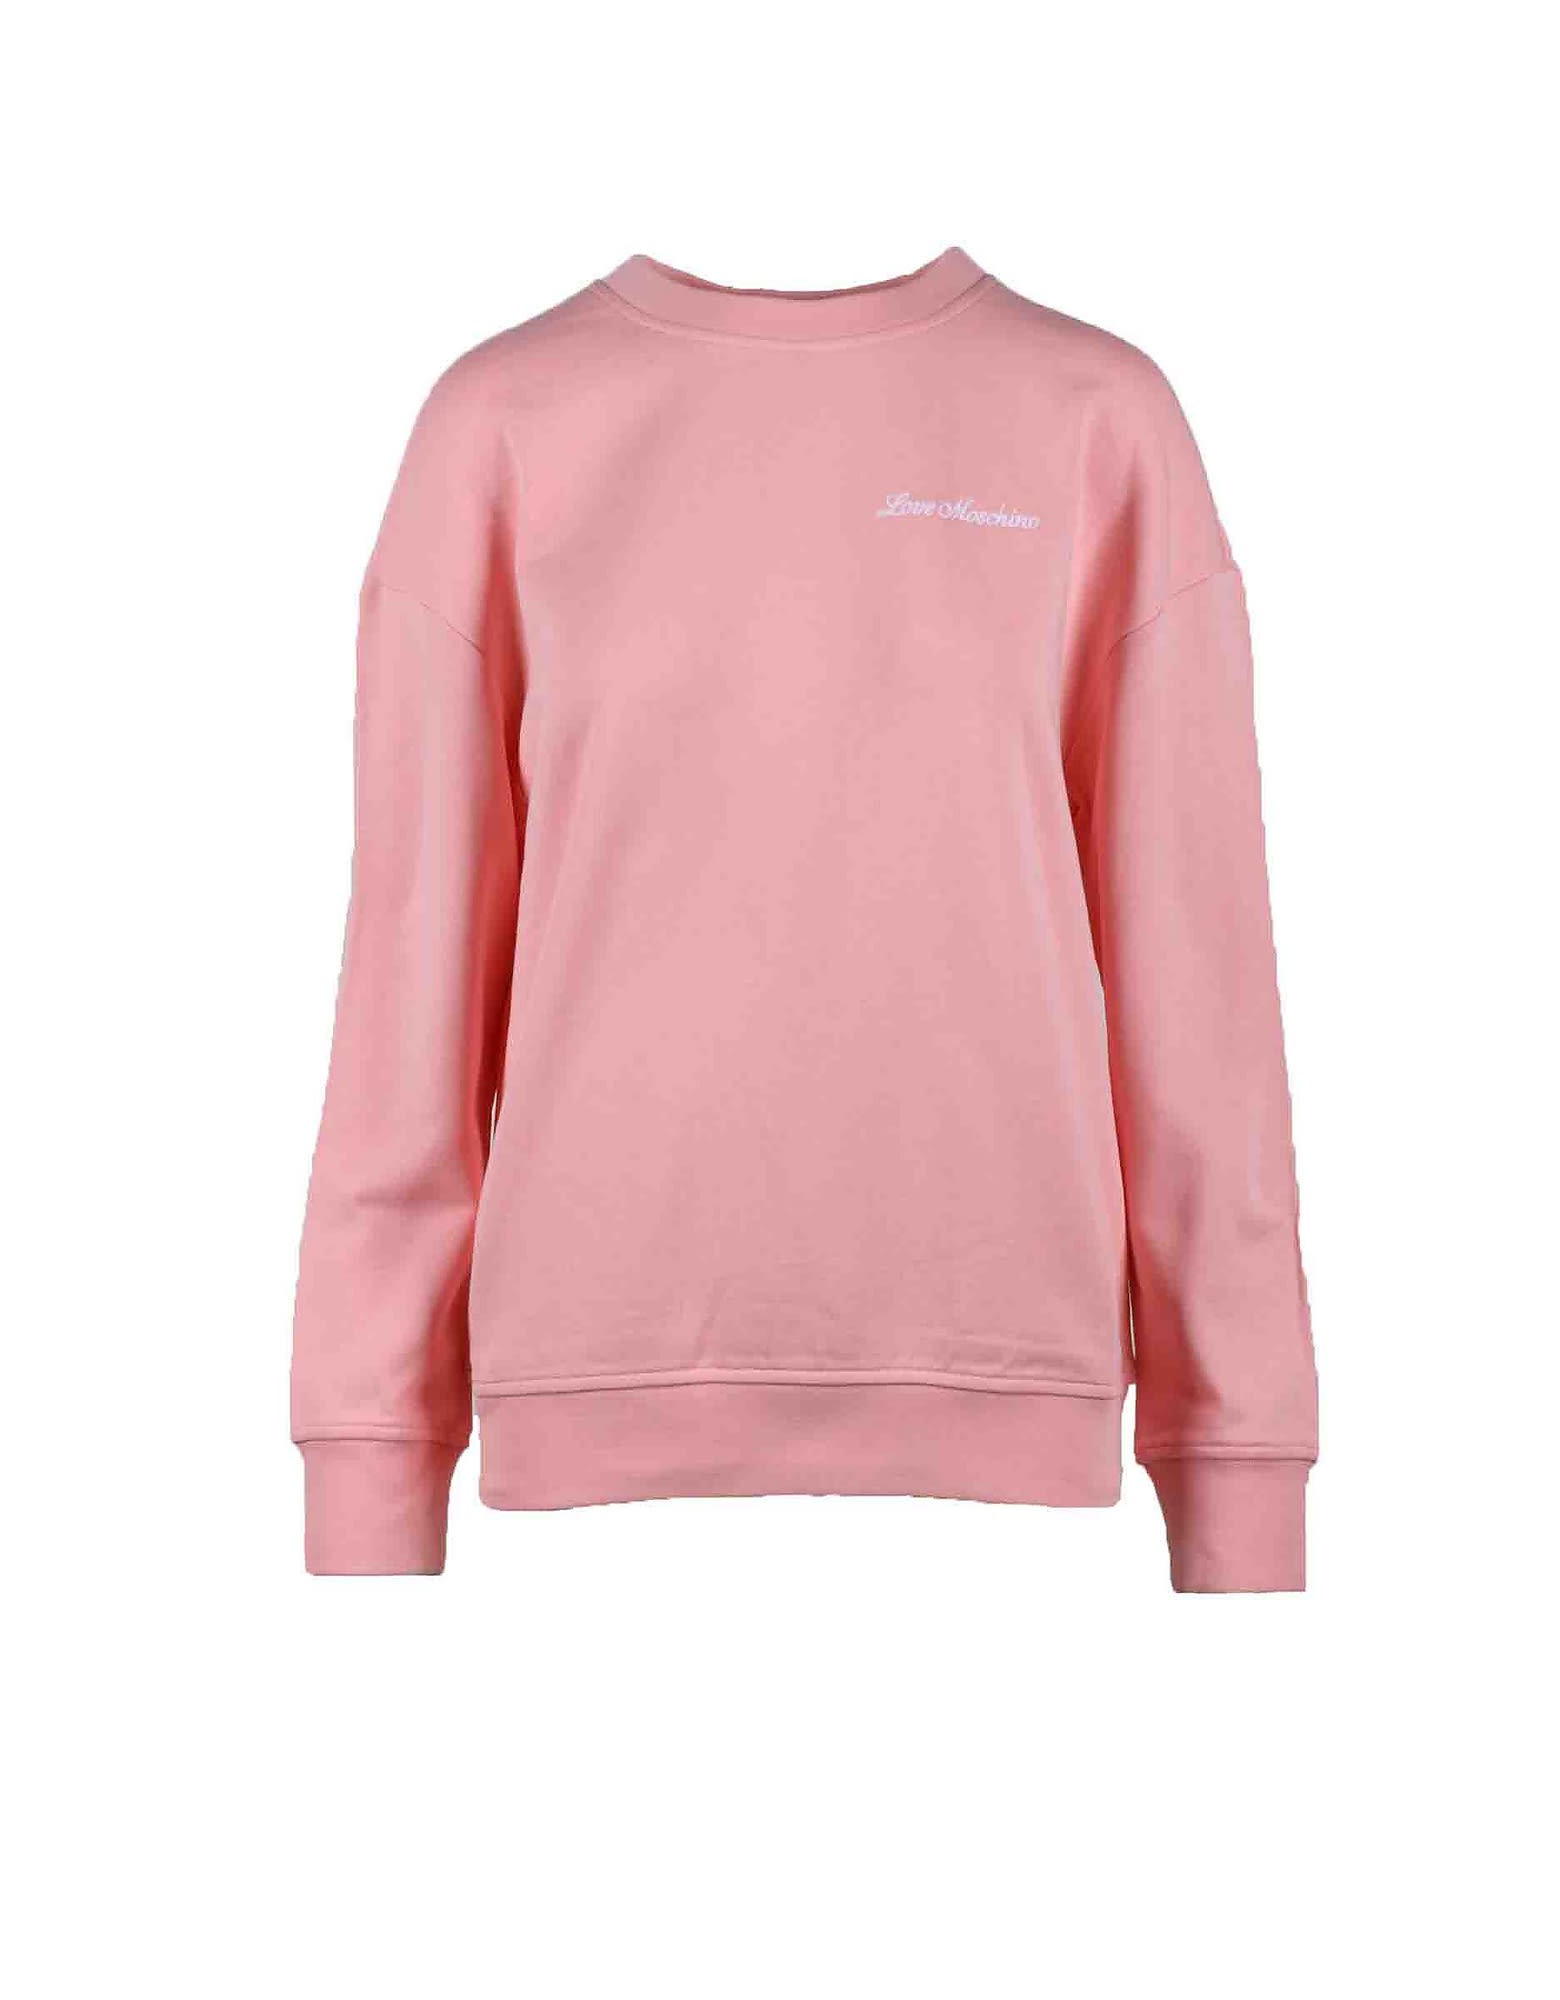 Love Moschino Womens Pink Sweatshirt